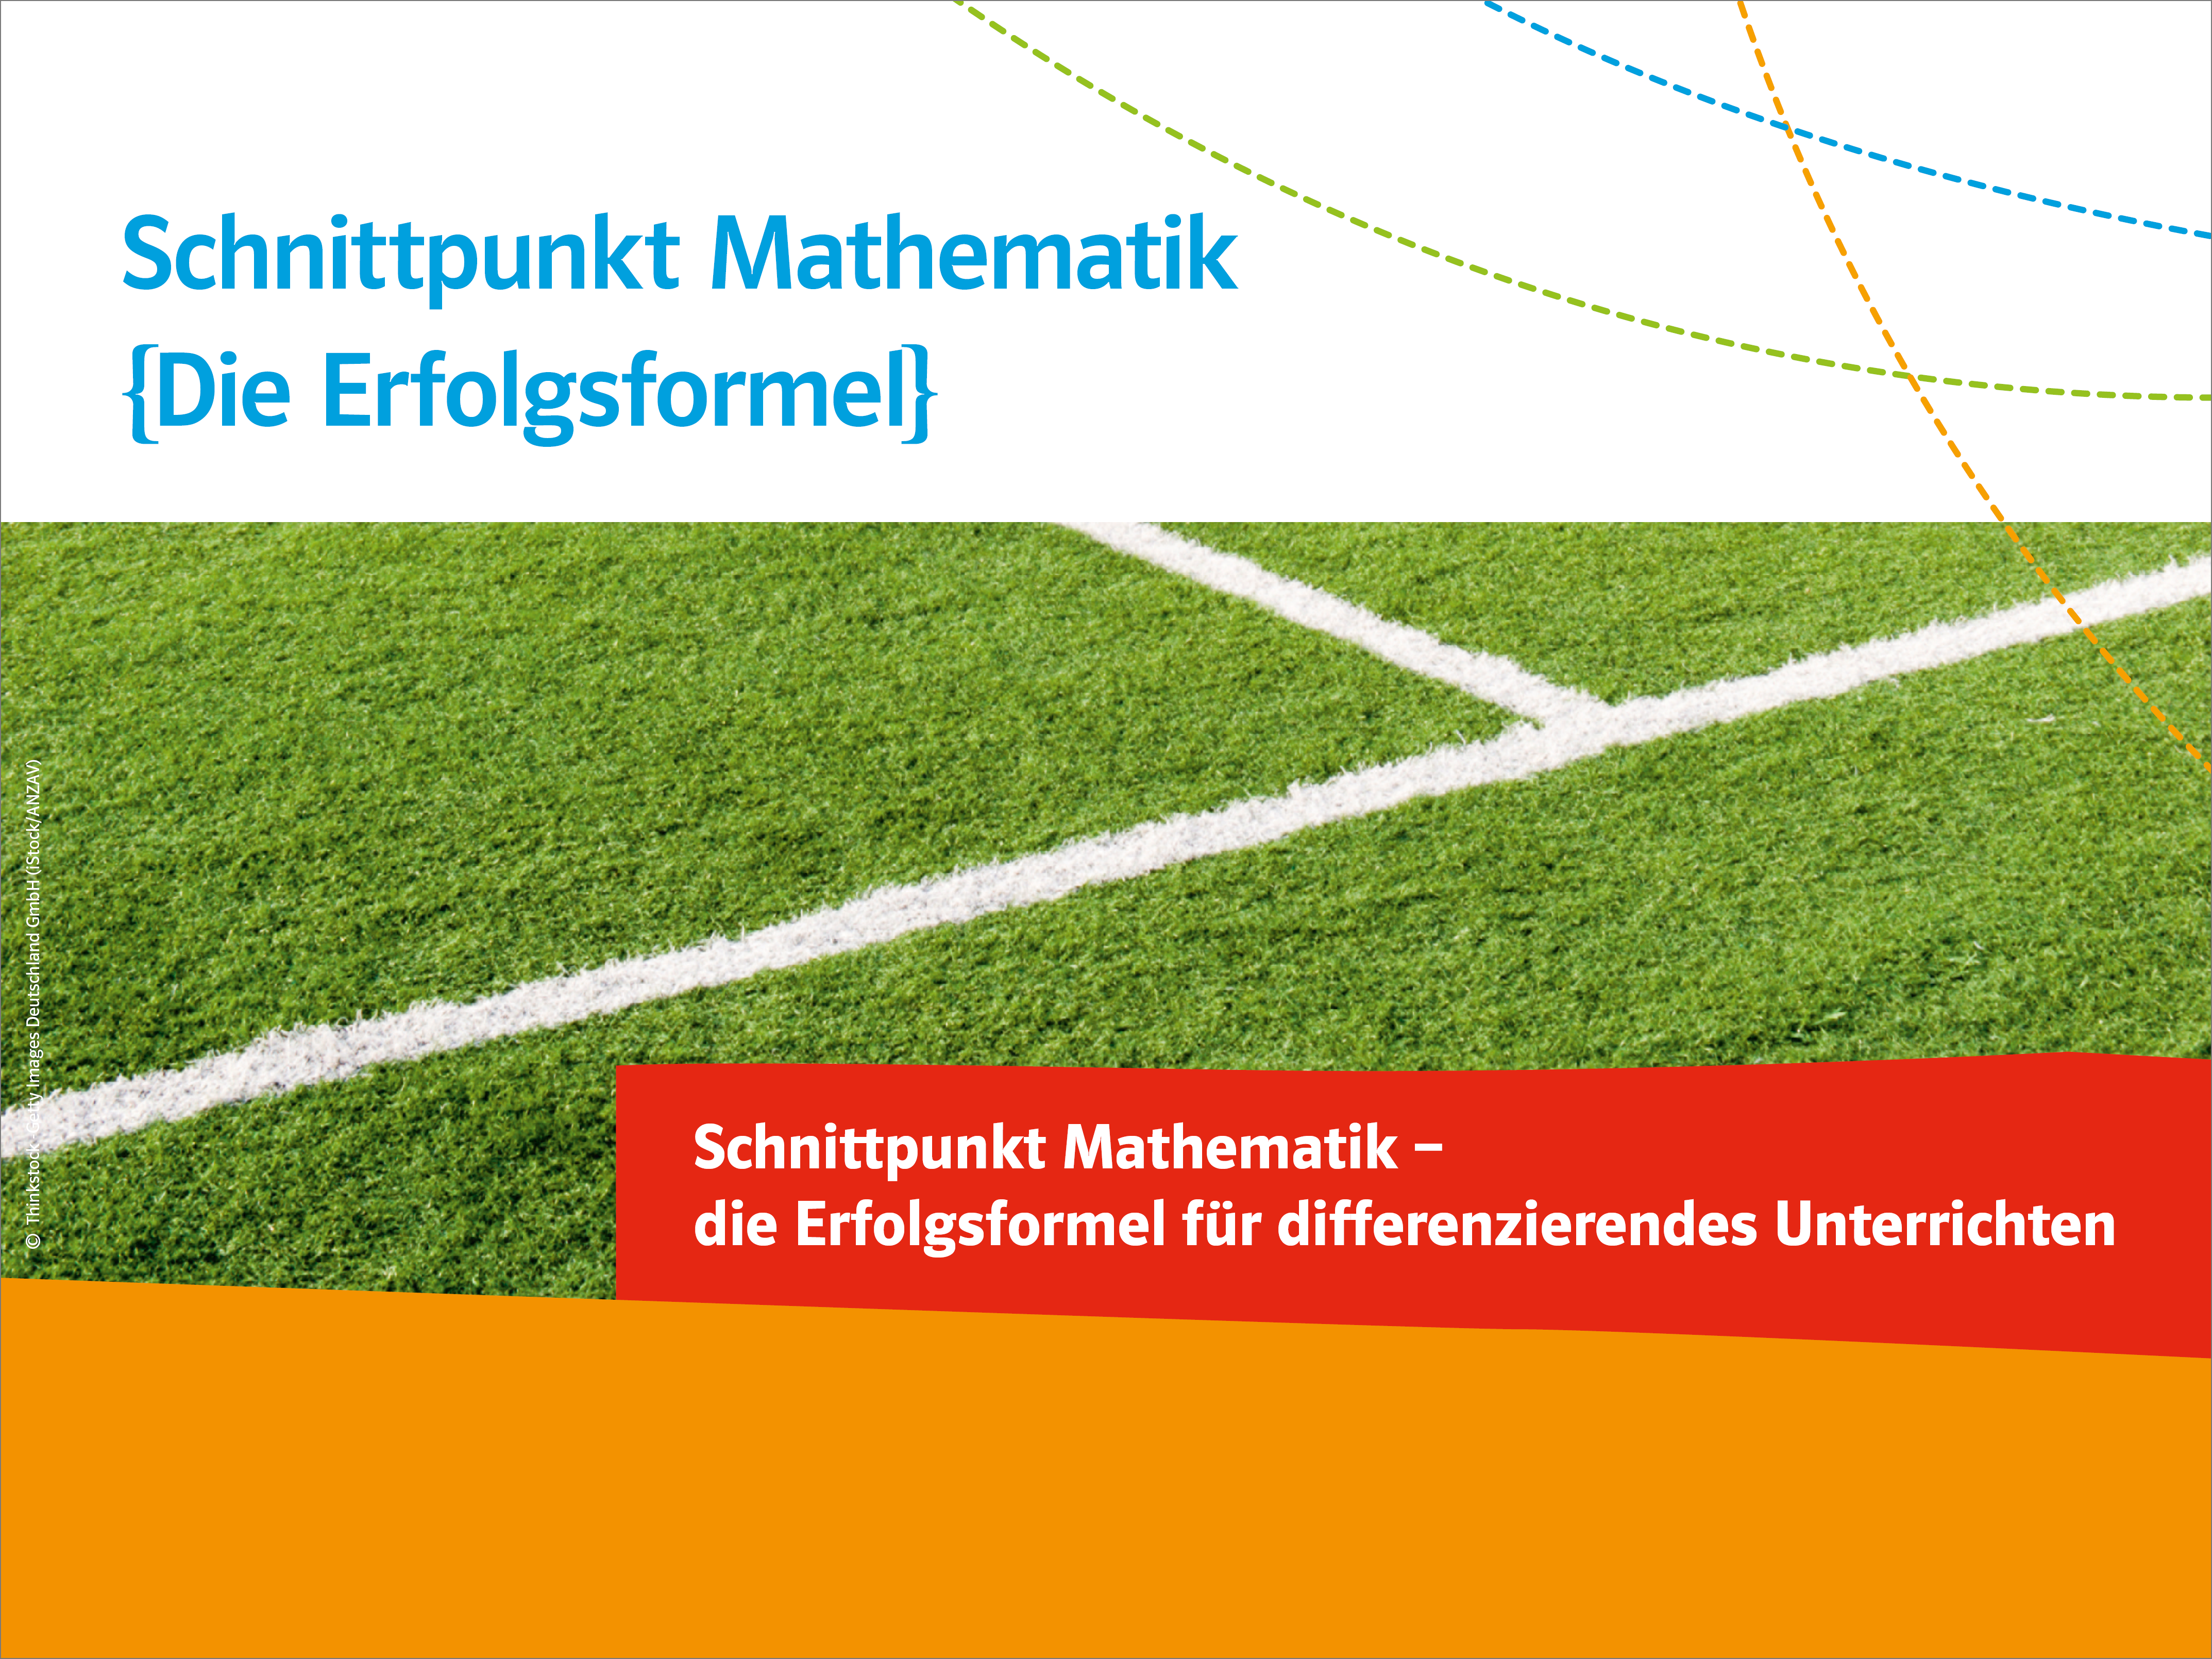 Schnittpunkt Mathematik Baden-Württemberg 2015